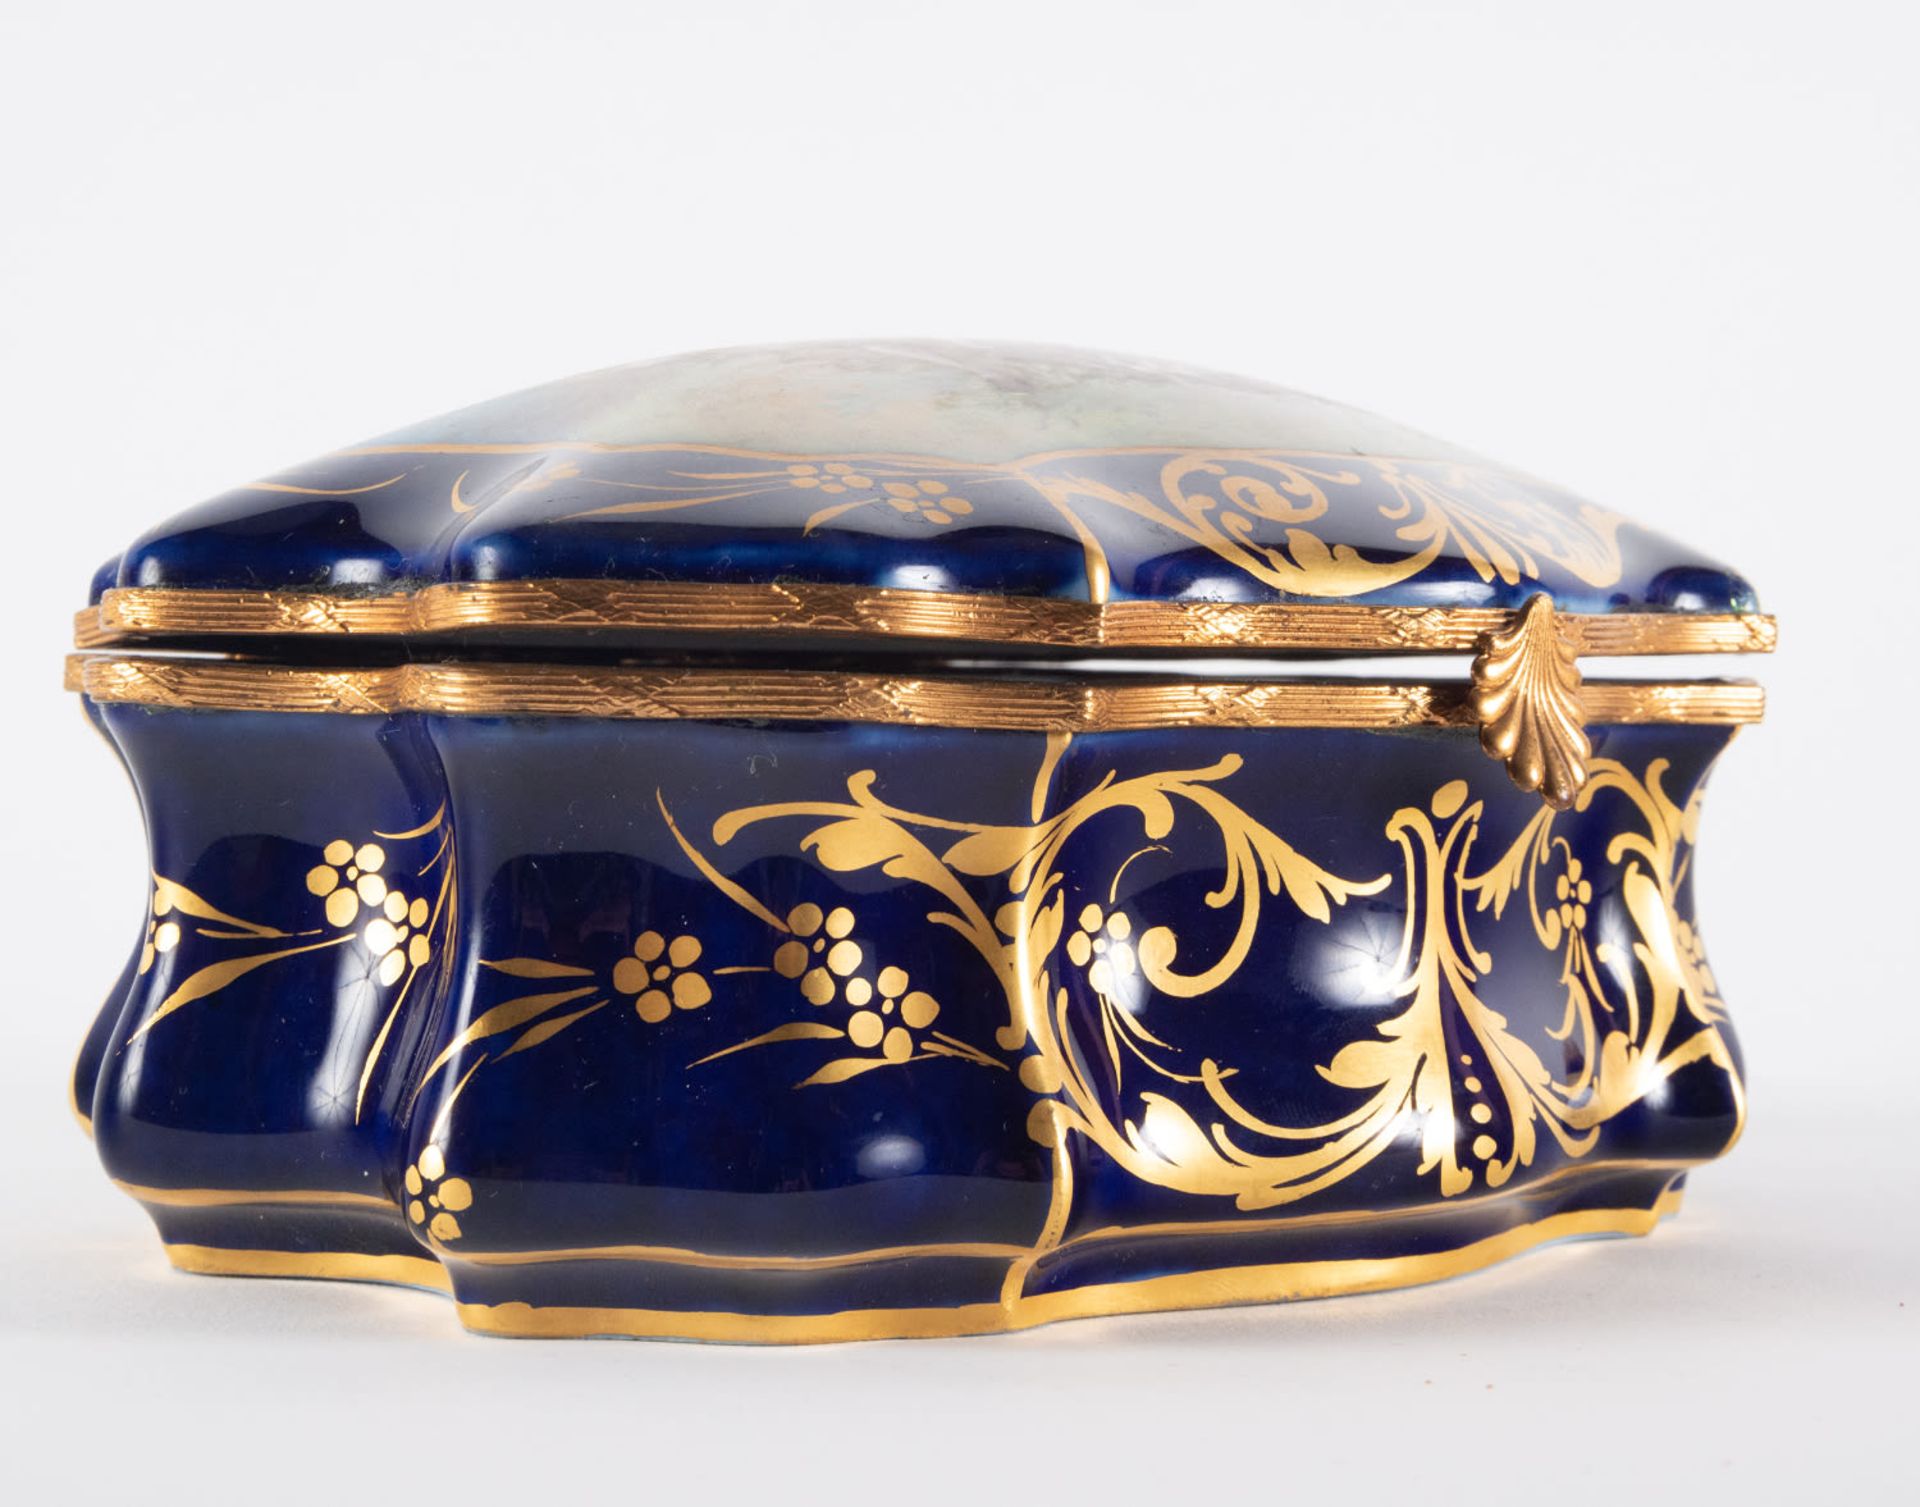 Enamelled Sèvres porcelain jewelry box, 19th century, Chateau de les Etoiles series - Image 5 of 6